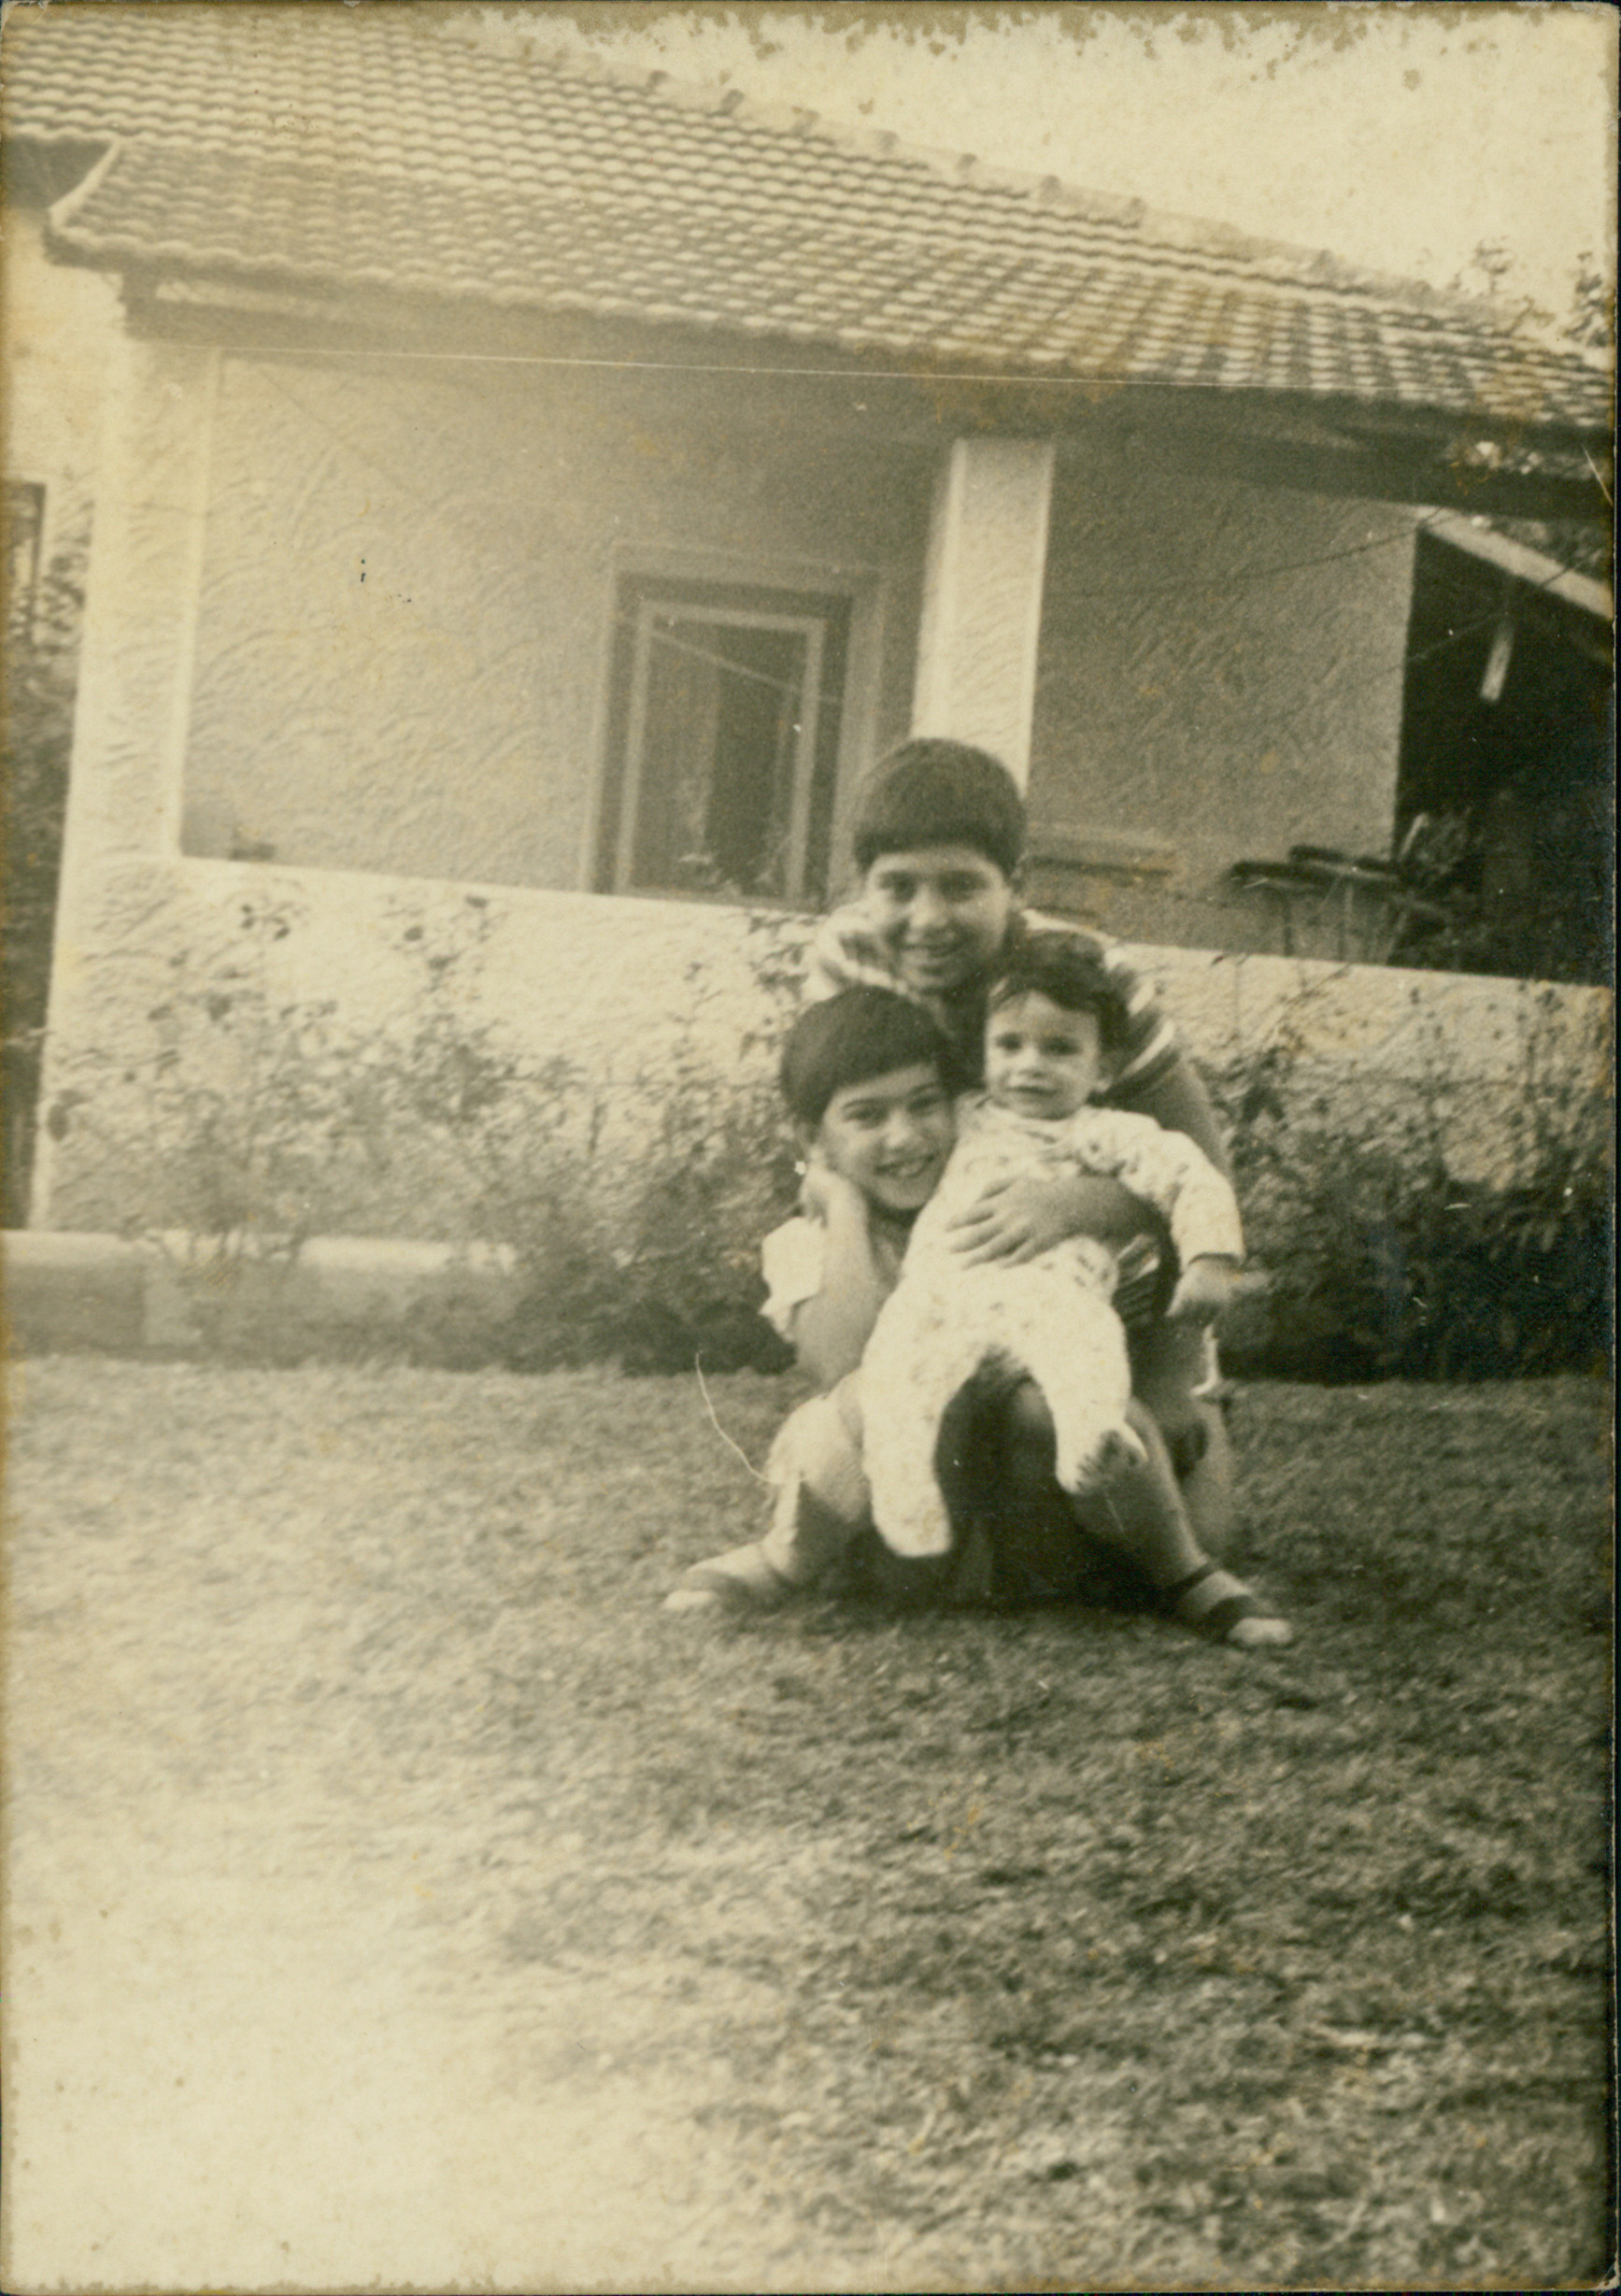 ילדי חנה לבית קירשנר וגדליהו צינס. מלמעלה - גיל, אורלי ורונית התינוקת, הרצליה, 1974